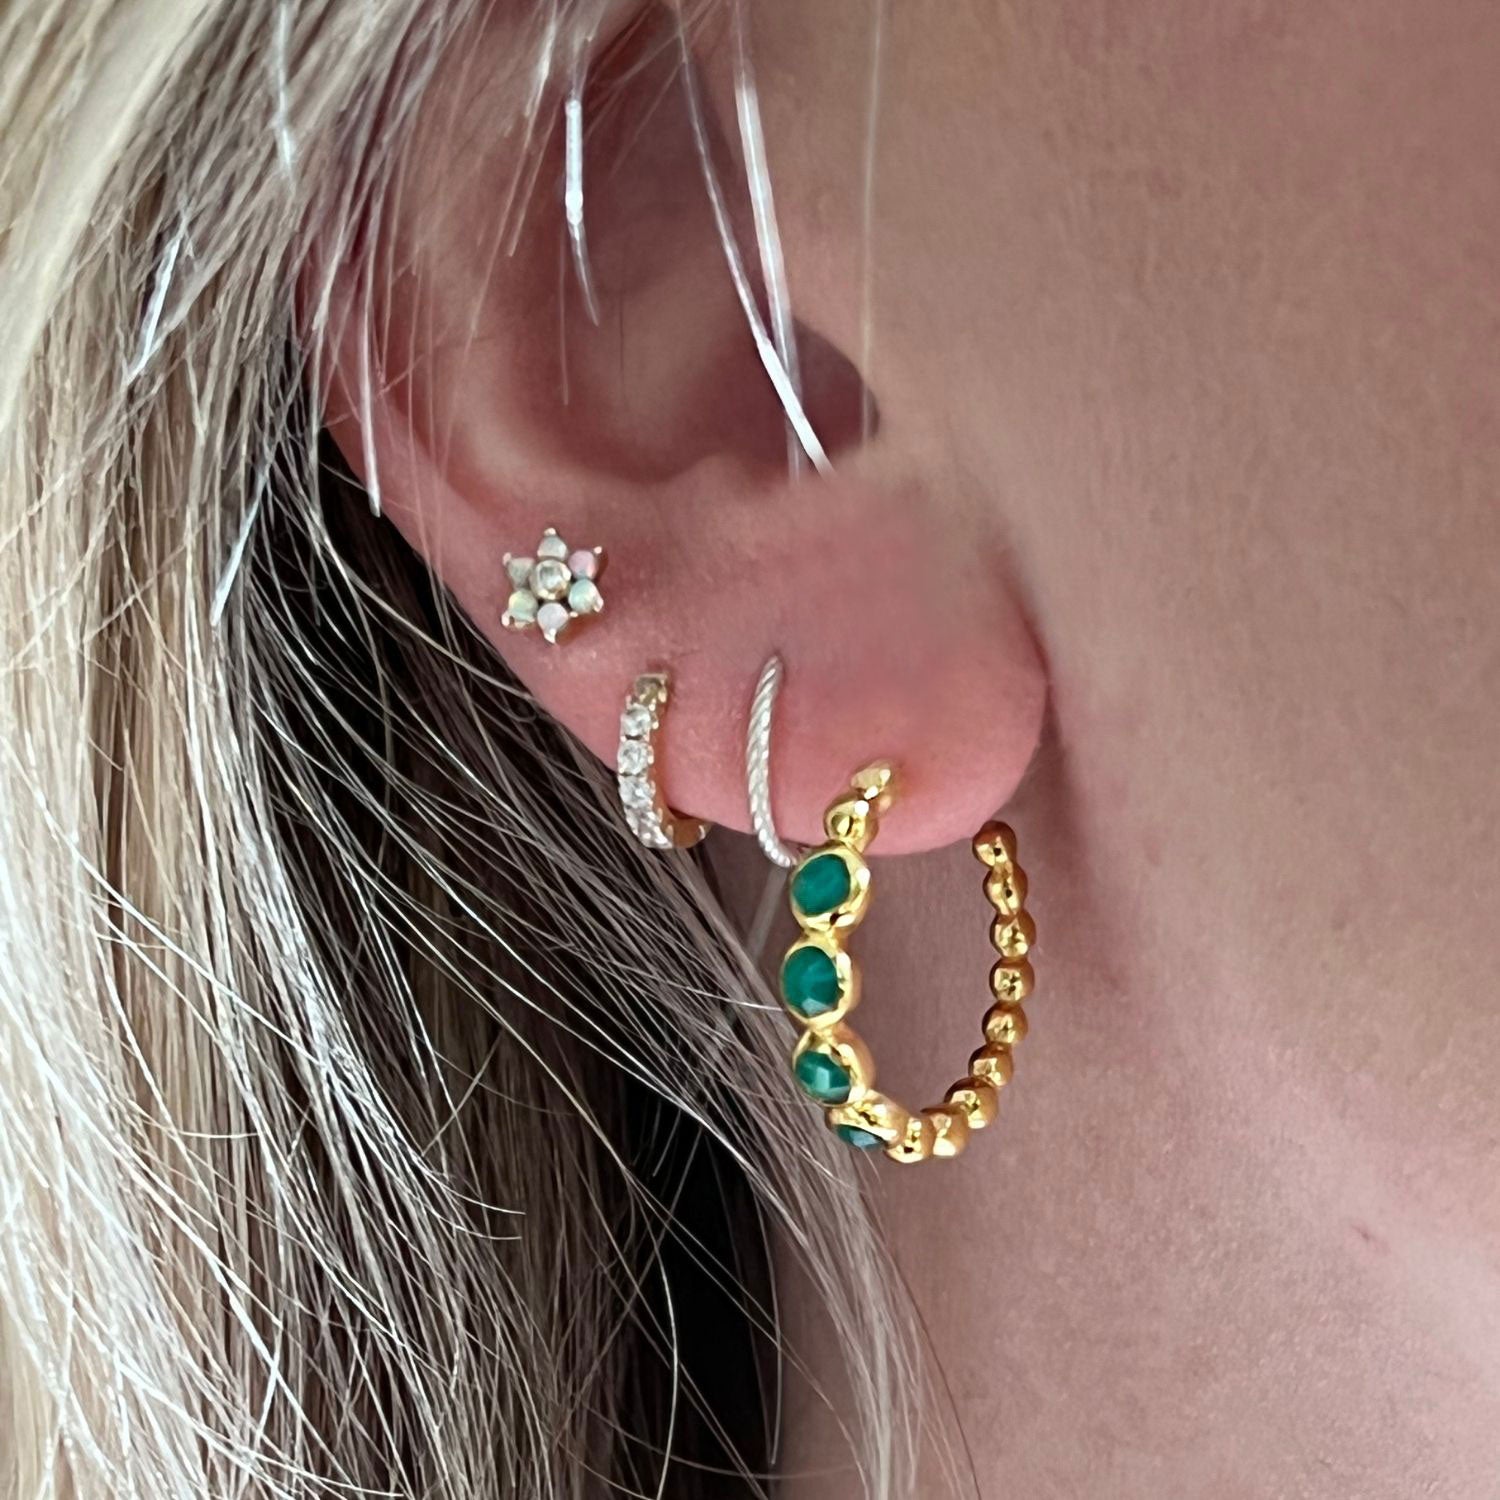 Bubble Green Onyx Earrings Vermeil